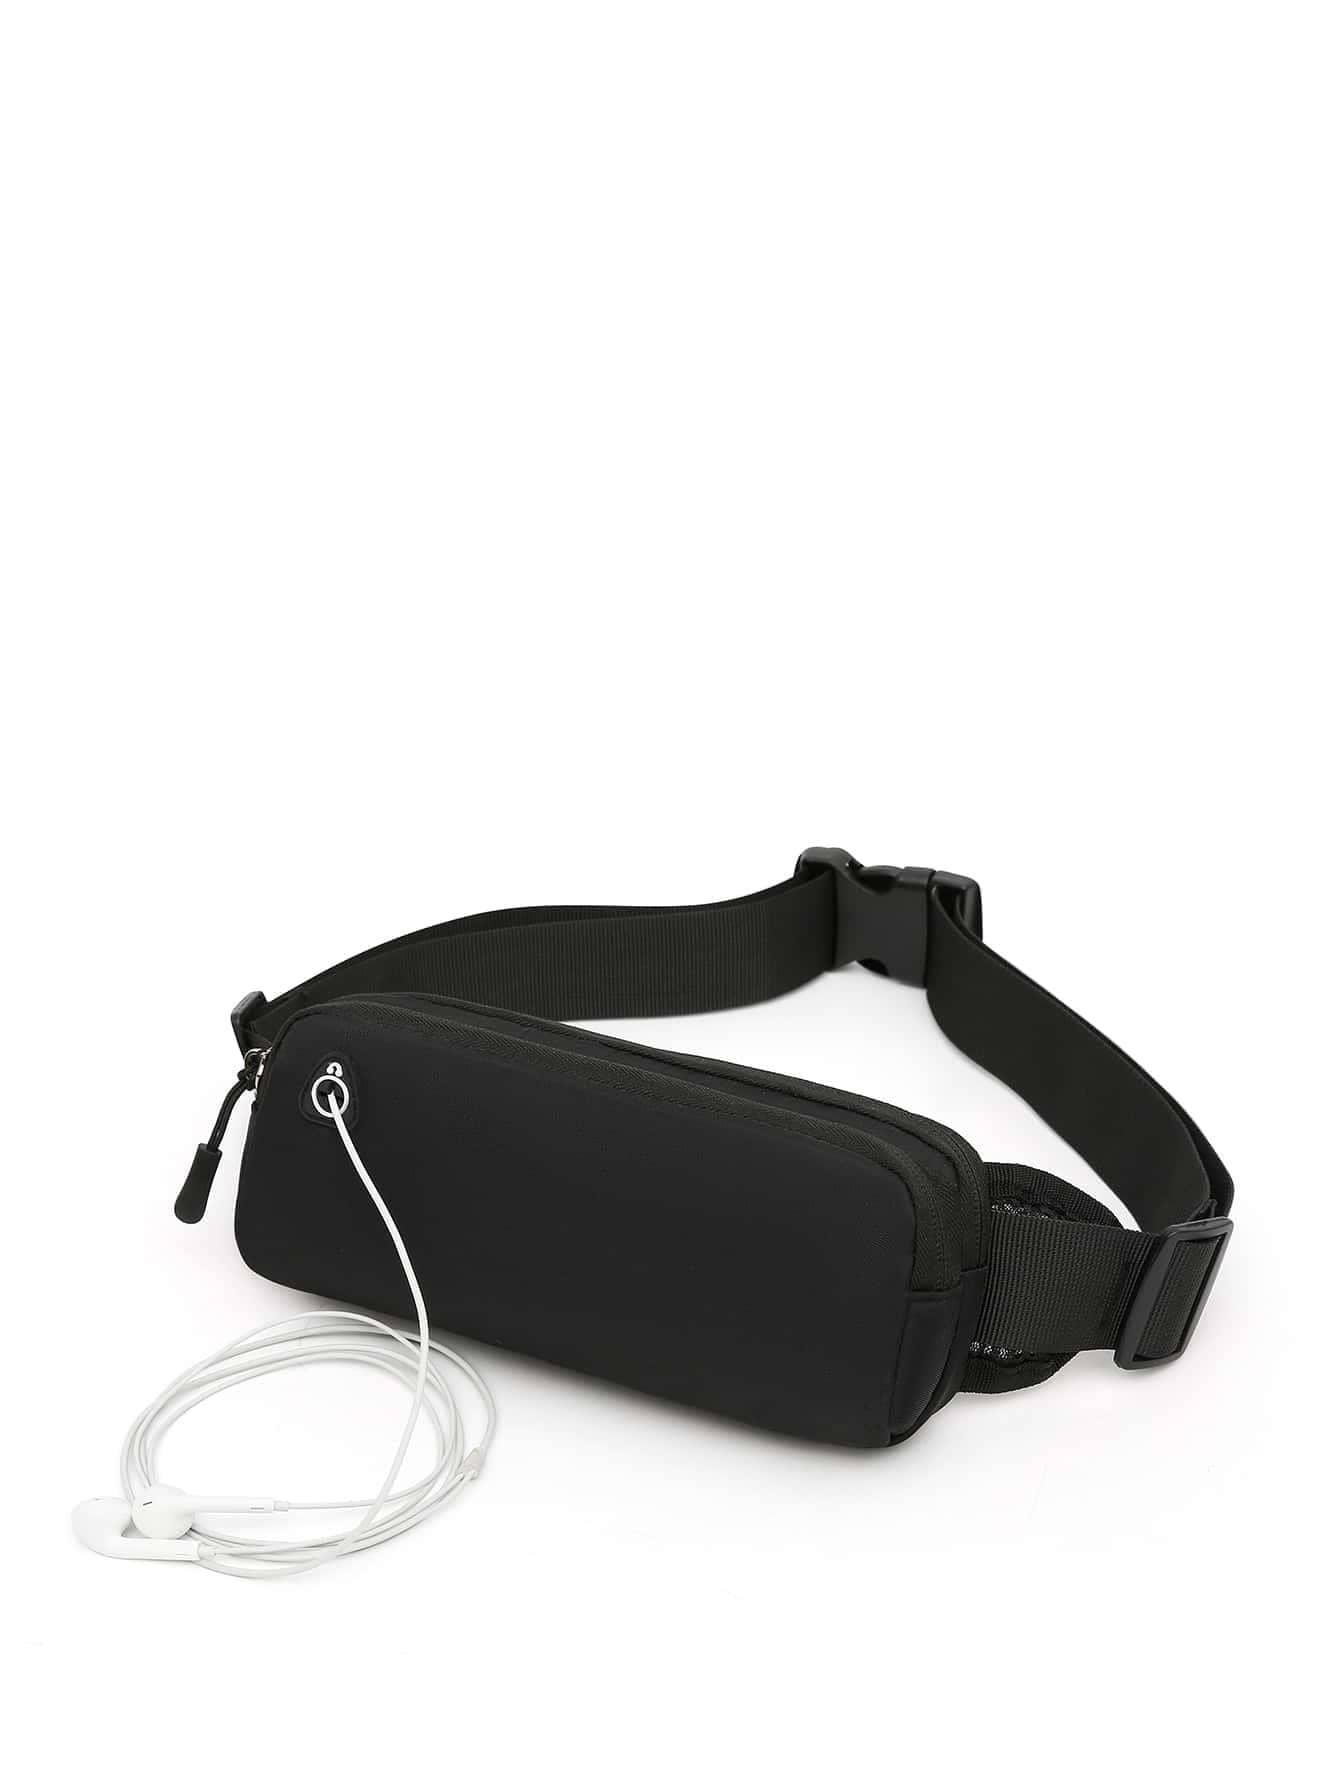 1 шт. поясная сумка поясная сумка для бега спортивная портативная спортивная сумка велосипедный телефон женский беговой пояс, черный сумка спортивная mikimarket